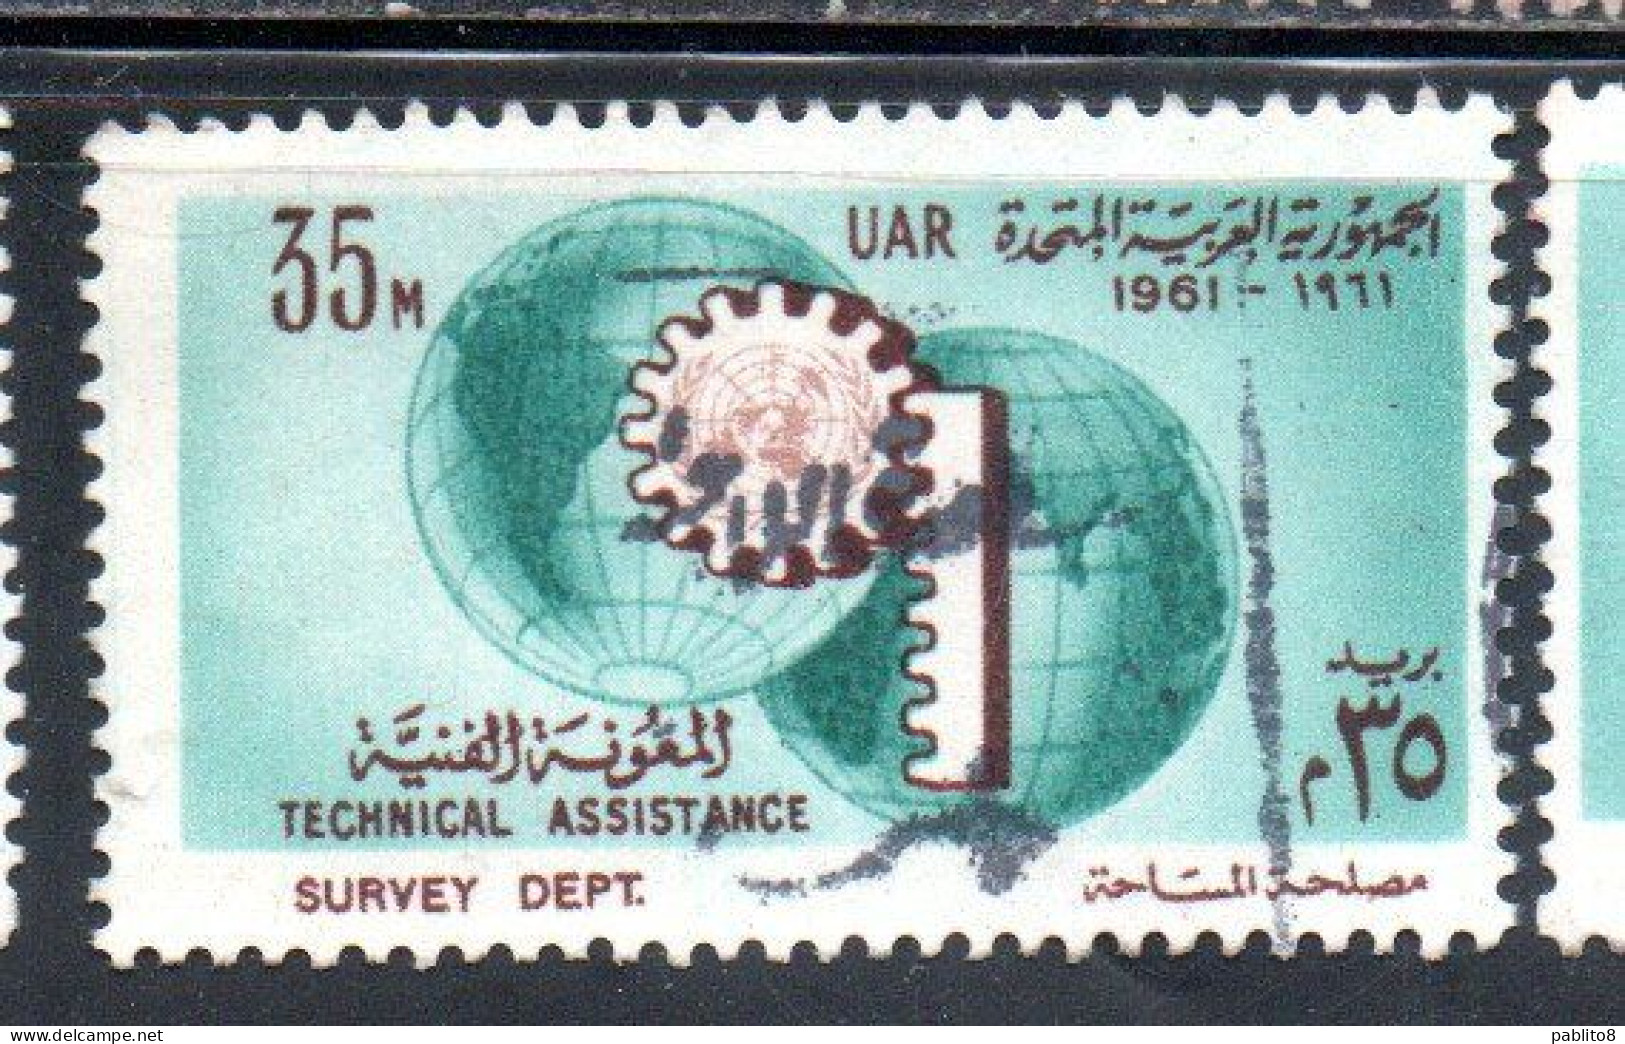 UAR EGYPT EGITTO 1961 UN ONU TECHNICAL ASSISTENCE PROGRAM AND 16th ANNIVERSARY 35m USED USATO OBLITERE' - Gebruikt